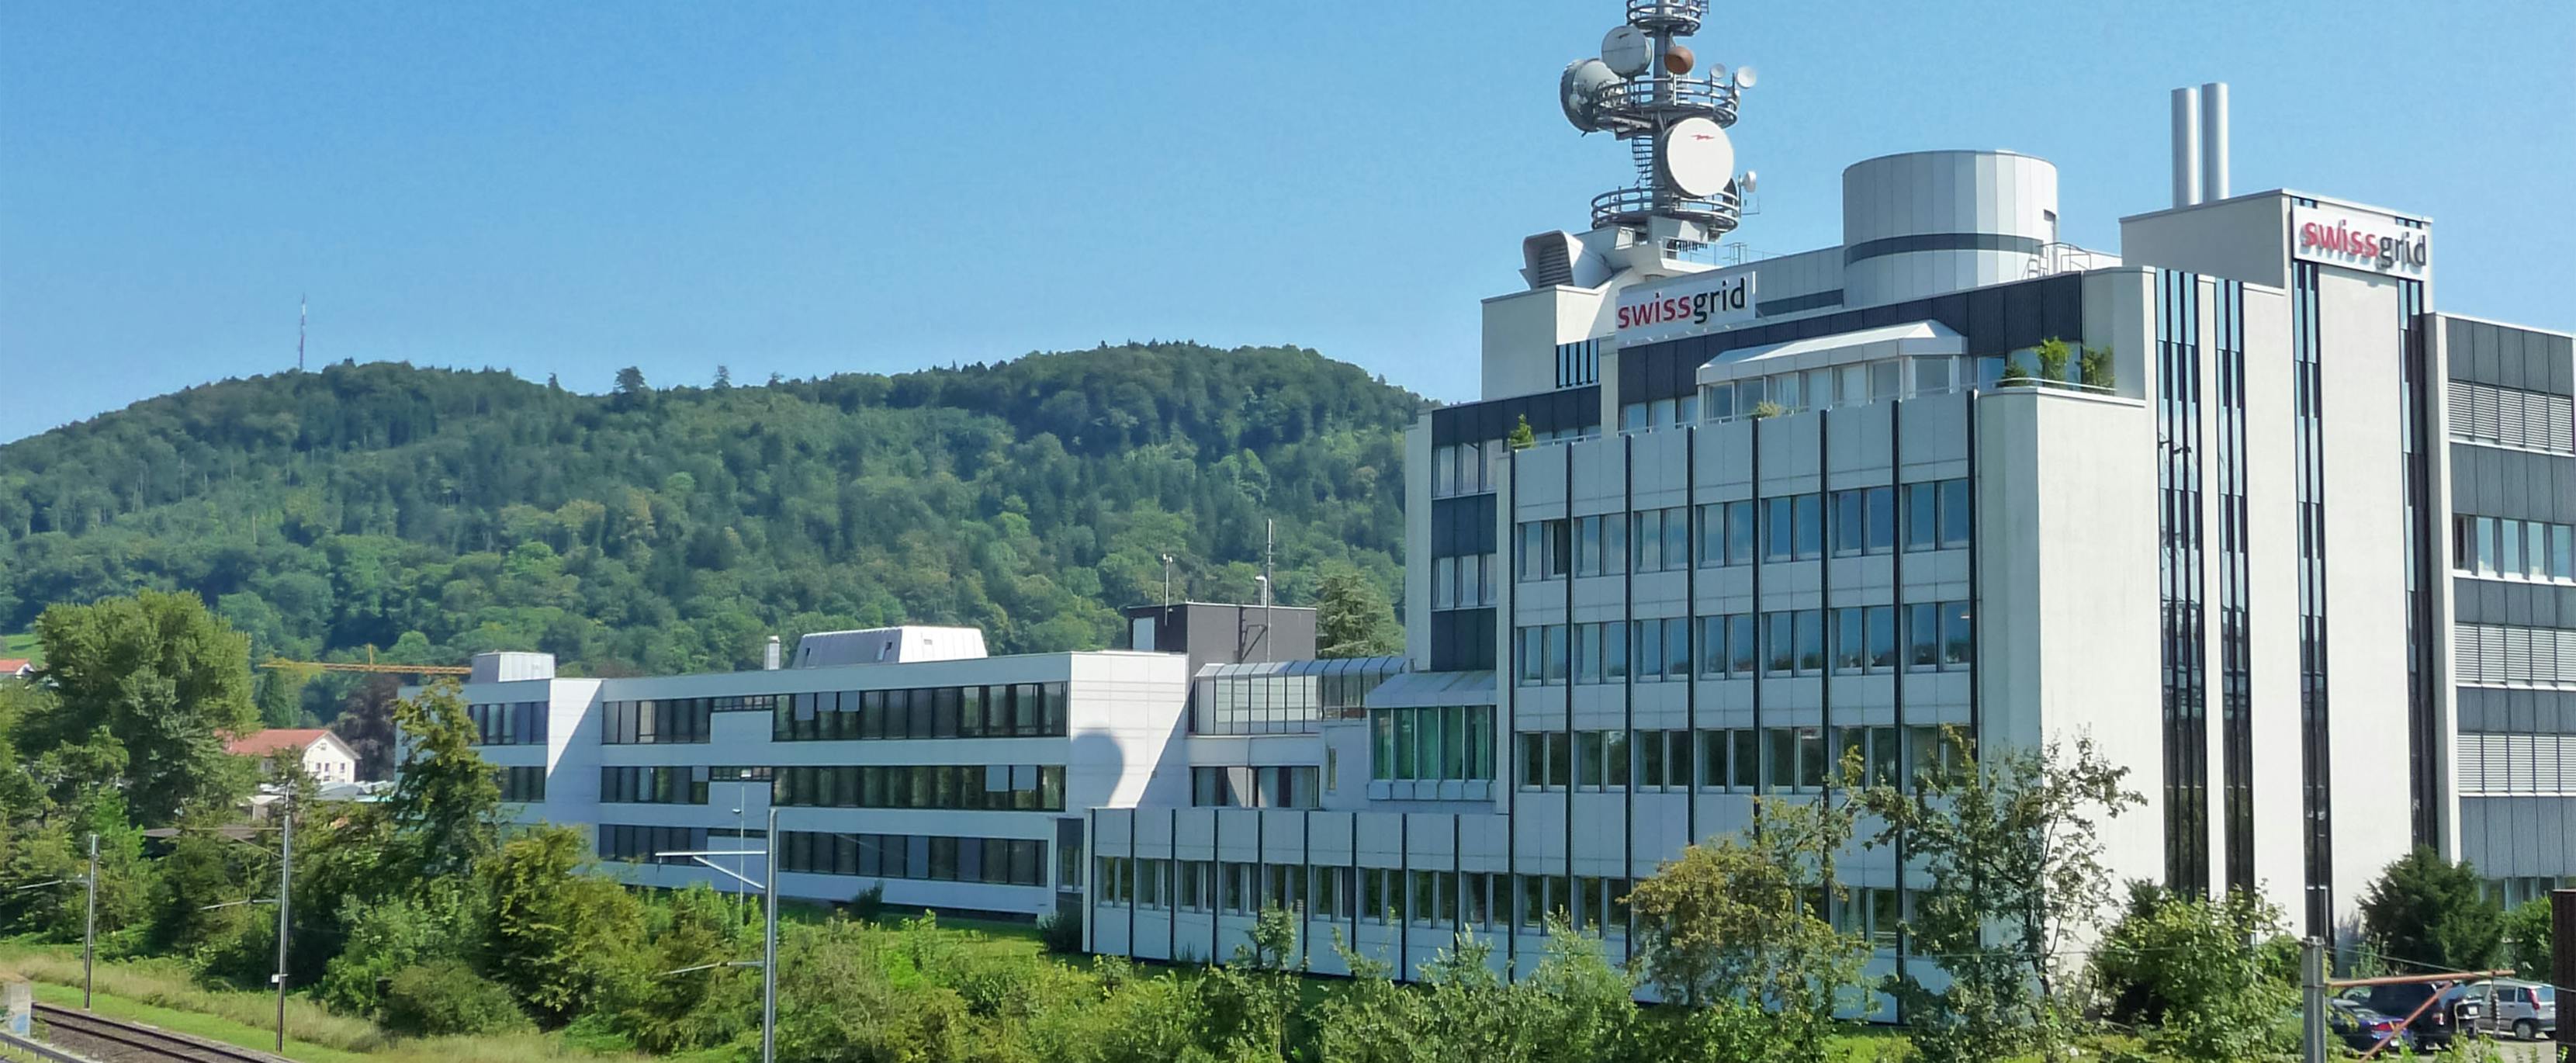 Swissgrids erster Hauptsitz in Laufenburg AG